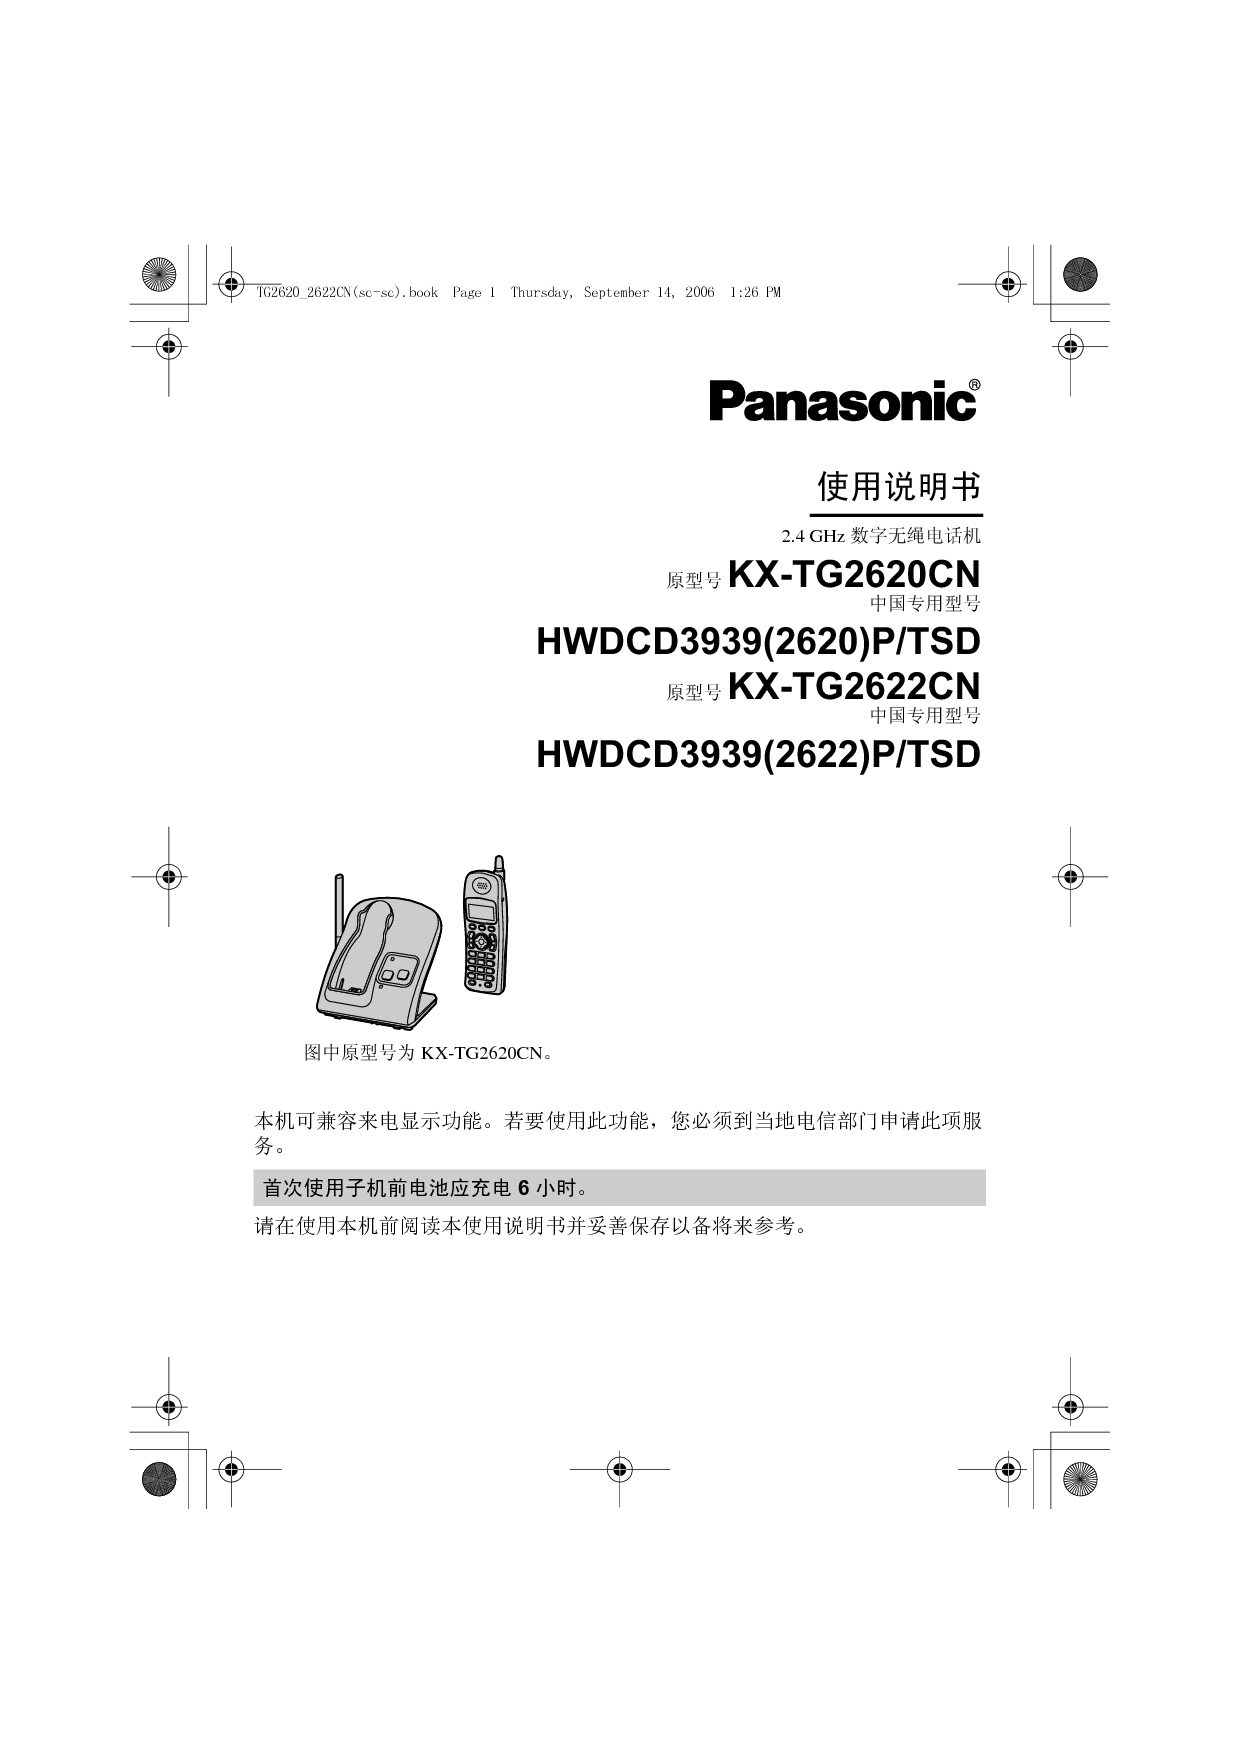 松下 Panasonic HWDCD3939(2620)P/TSD, KX-TG2620CN 说明书 封面